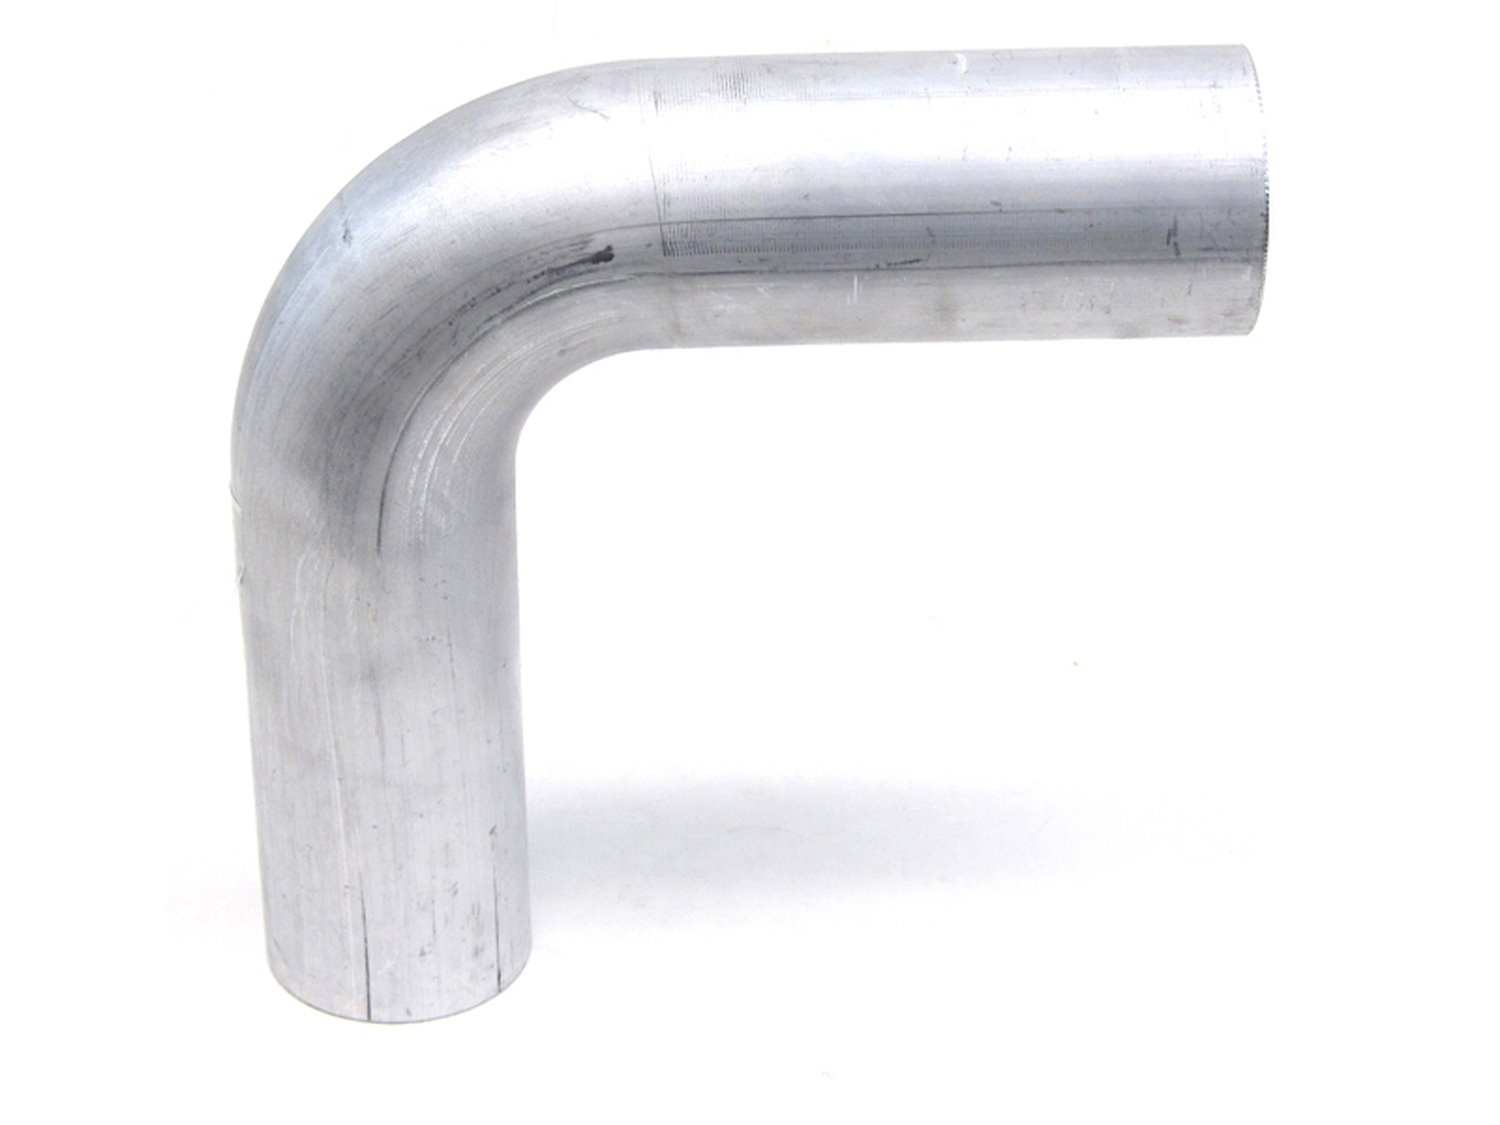 AT90-300-CLR-3 Aluminum Elbow Tube, 6061 Aluminum, 90-Degree Bend Elbow Tubing, 3 in. OD, Tight Radius, 3 in. CLR